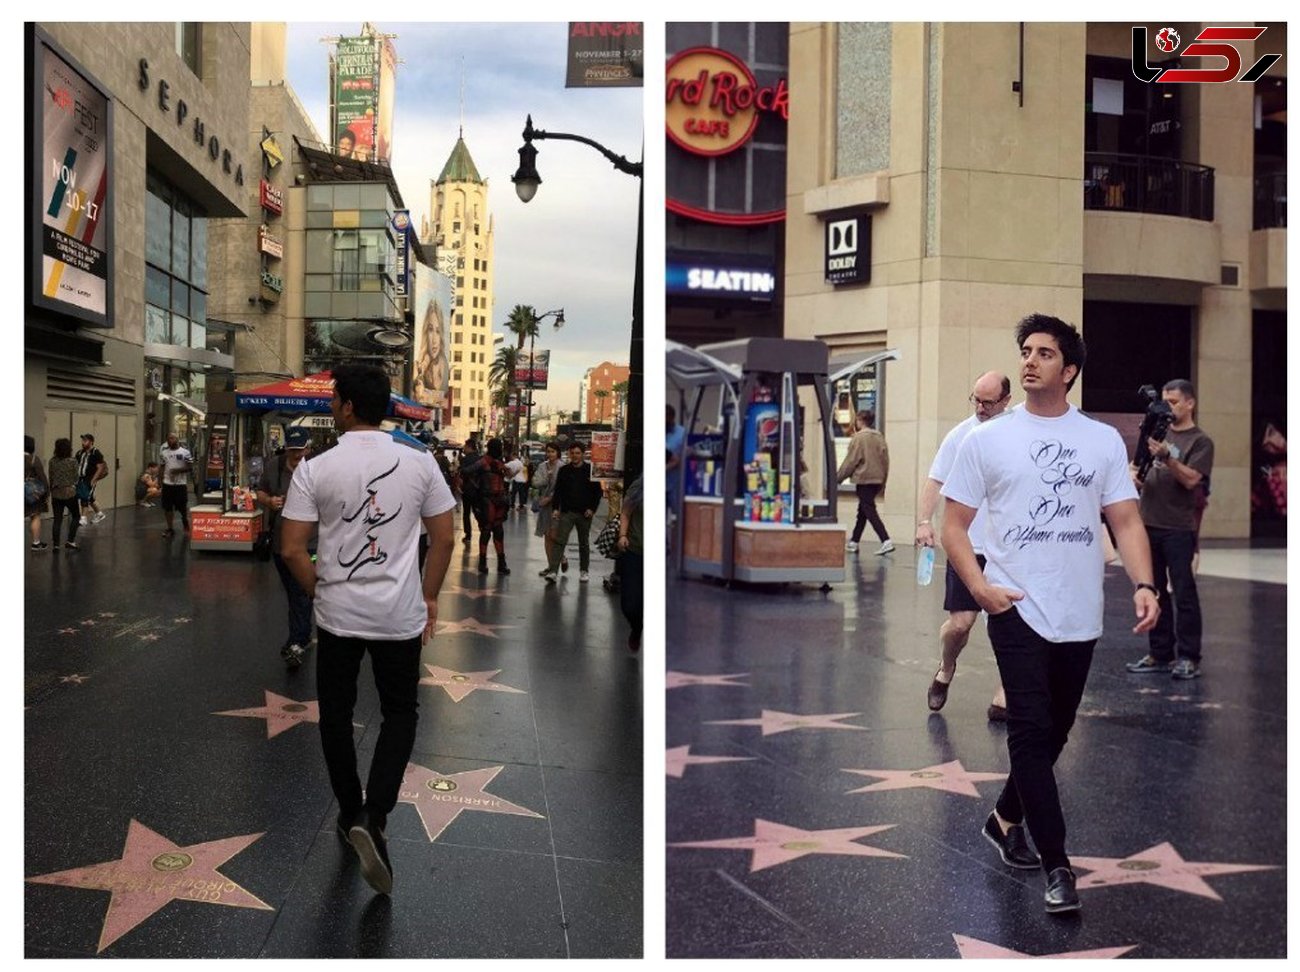 فرزاد فرزین با پیامی جالب در خیابان مشاهیر هالیوود در کالیفرنیا +عکس